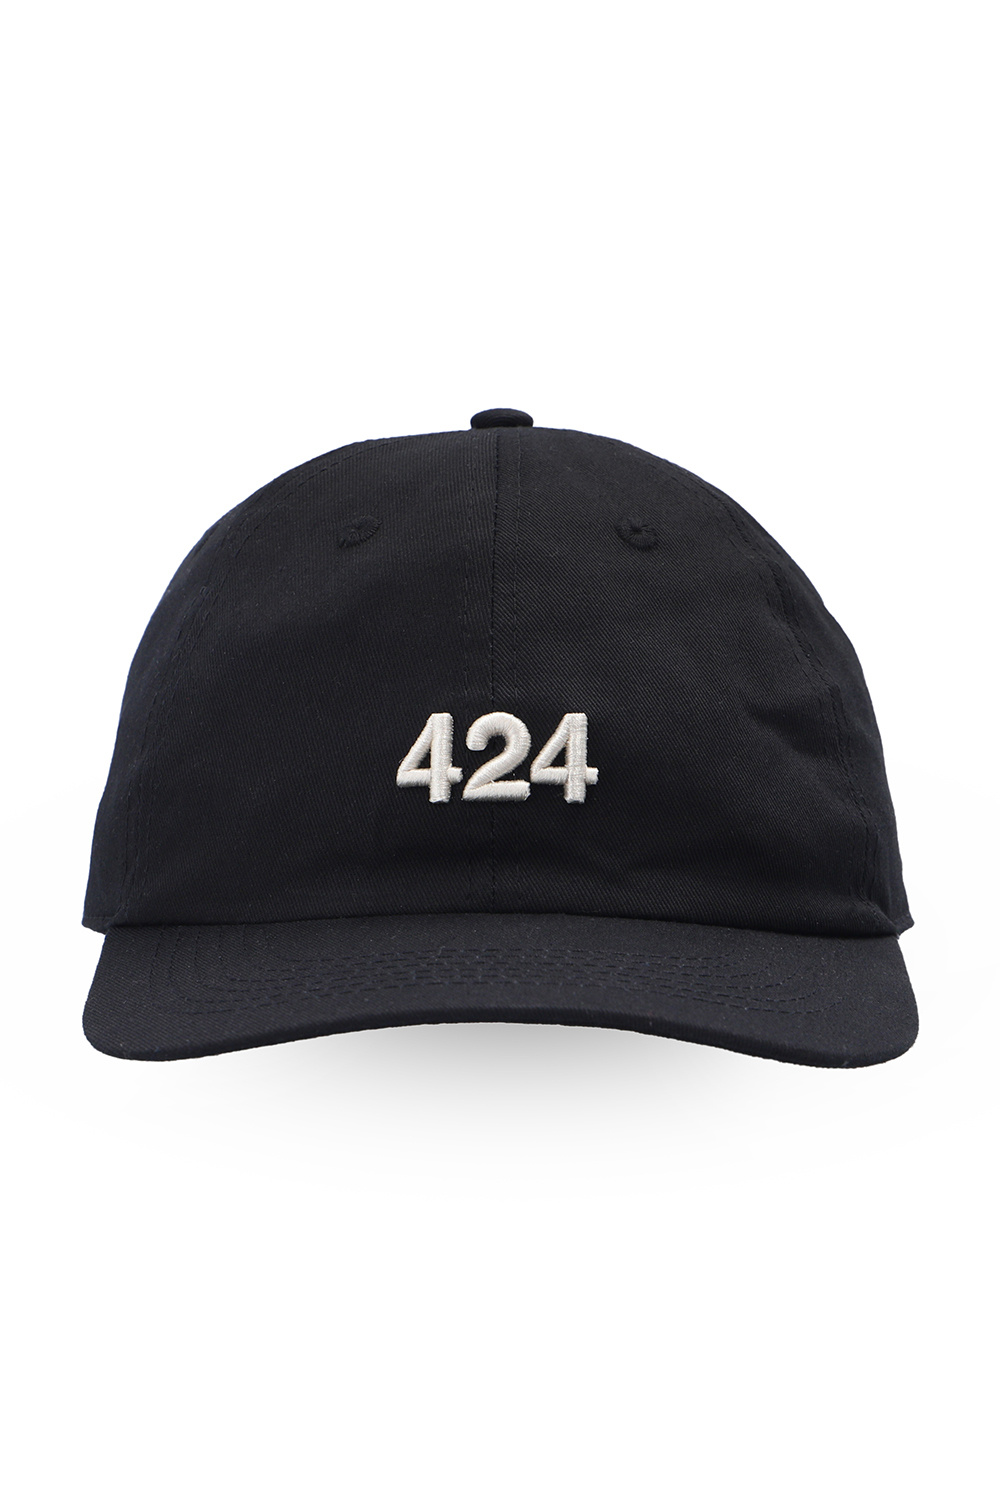 424 Baseball cap